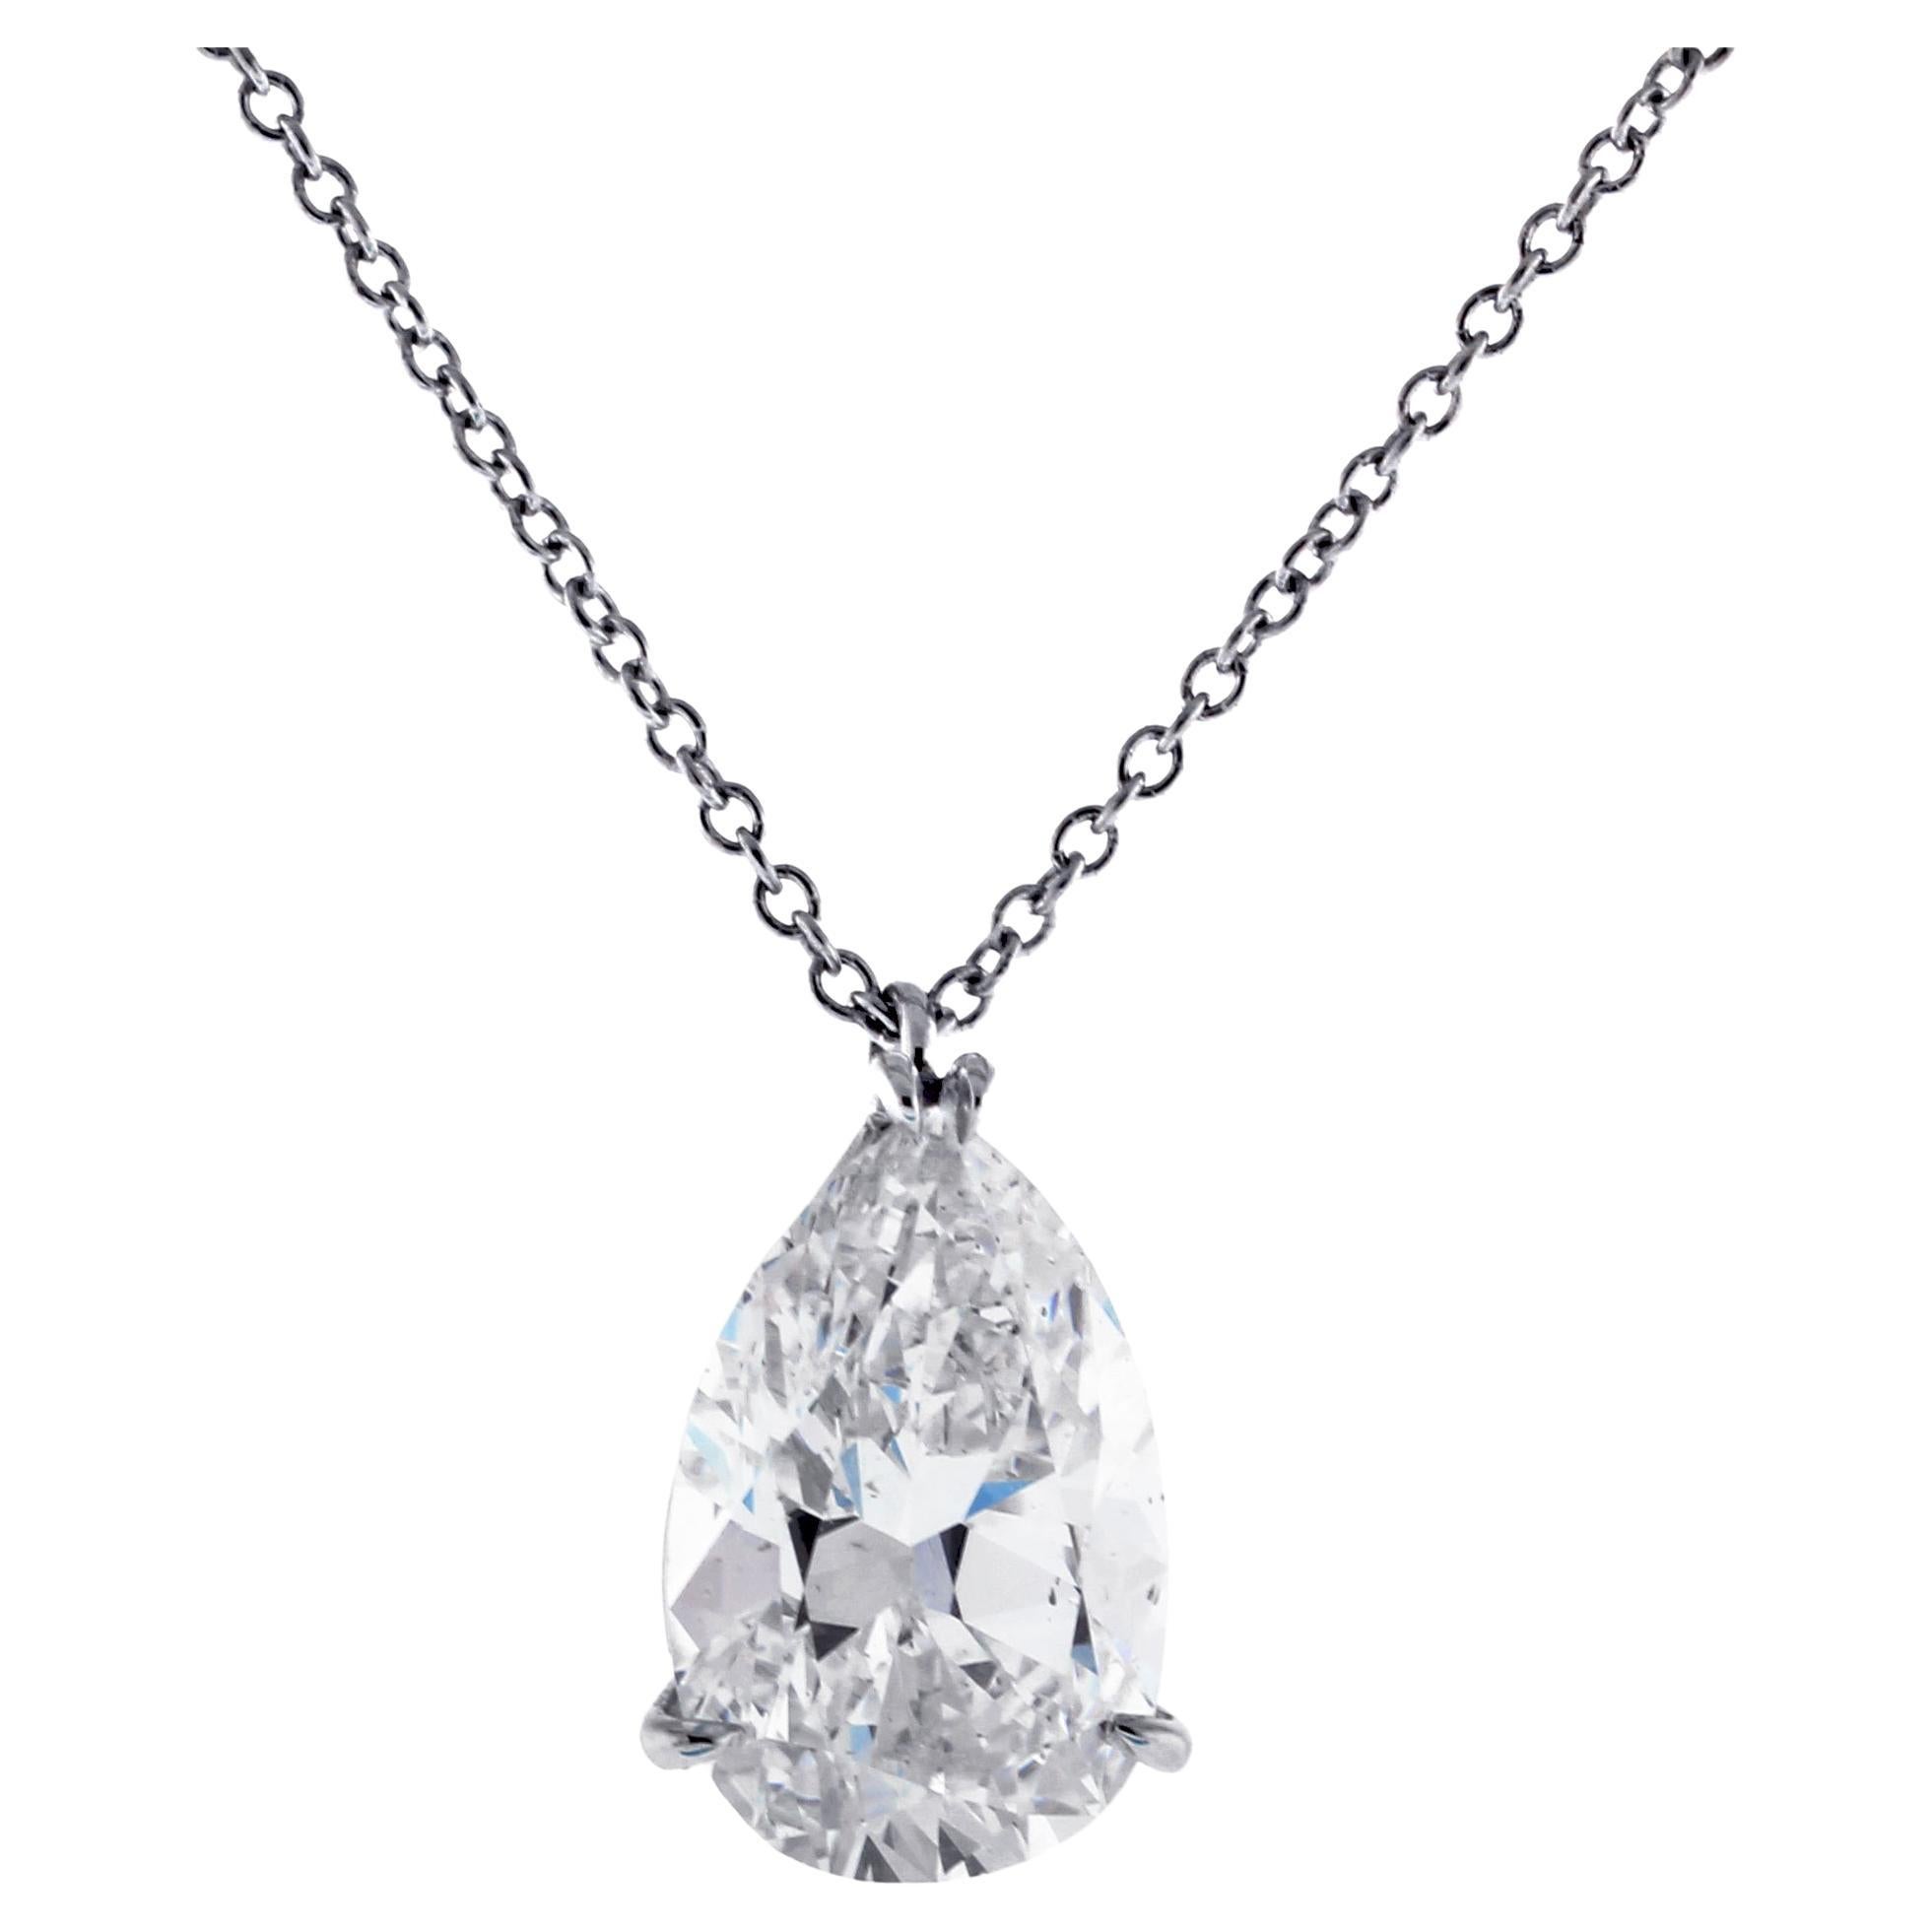 3.21 Carat Pear-Cut Golconda Diamond Pendant Necklace For Sale